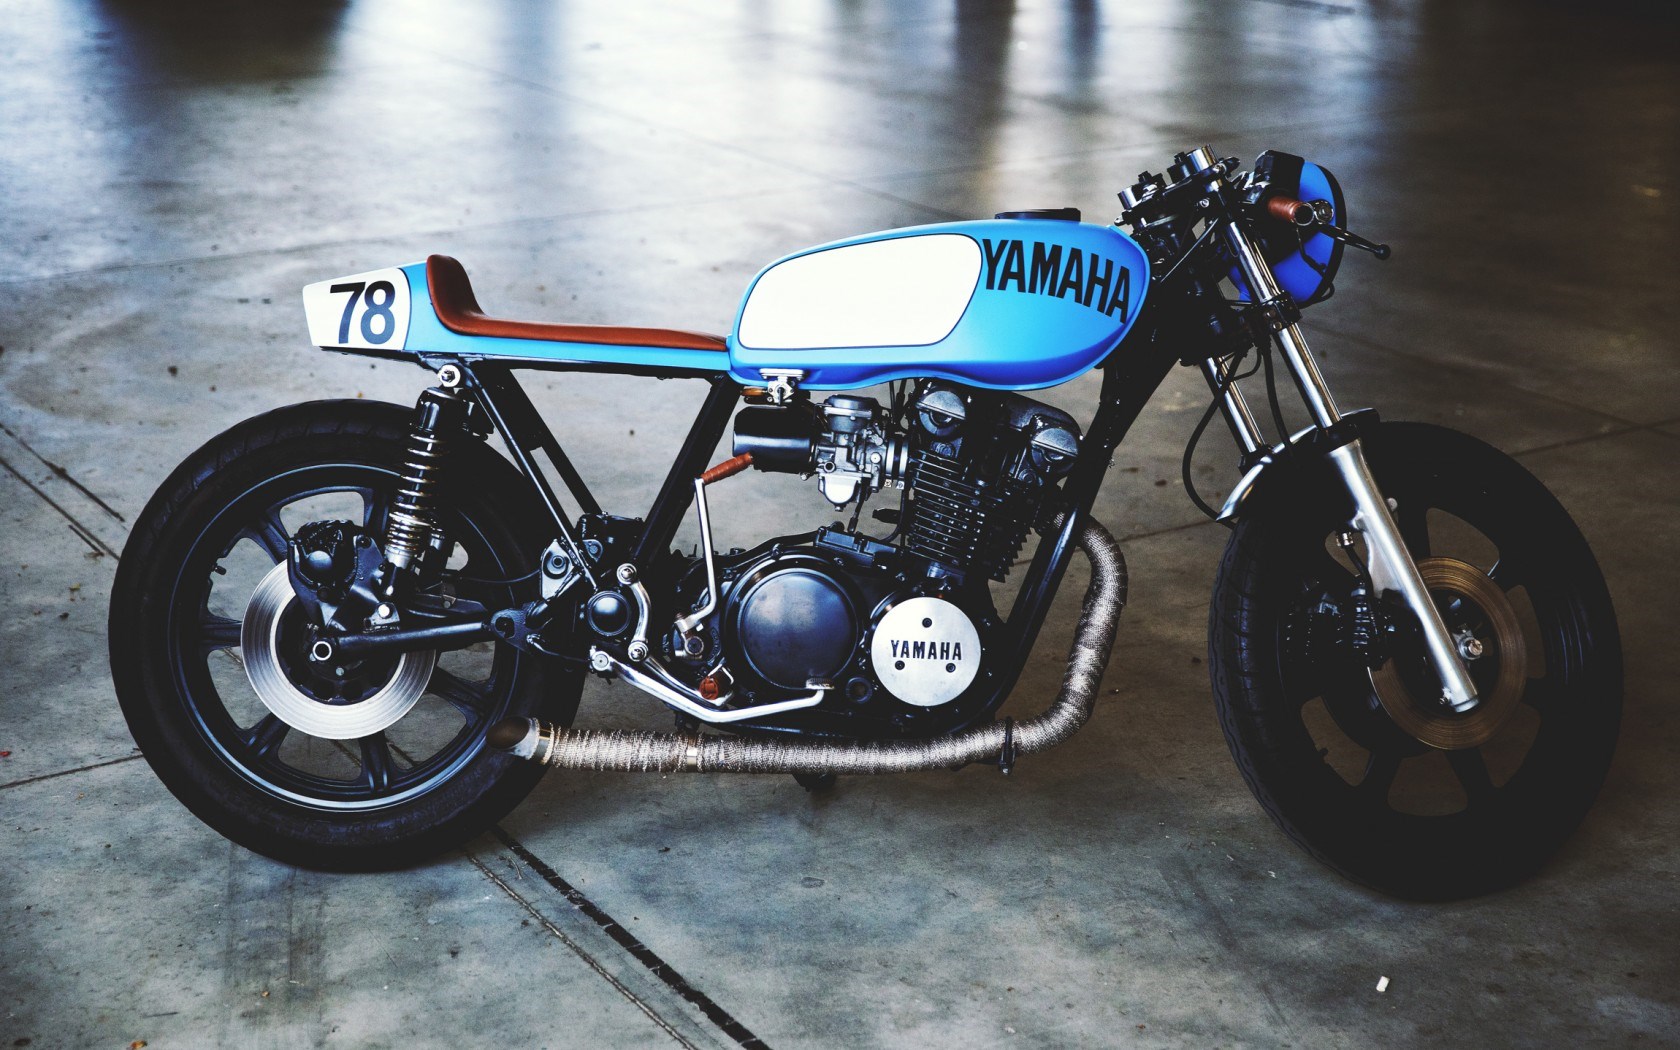 Yamaha Motorcycle Vintage Motorbike Side